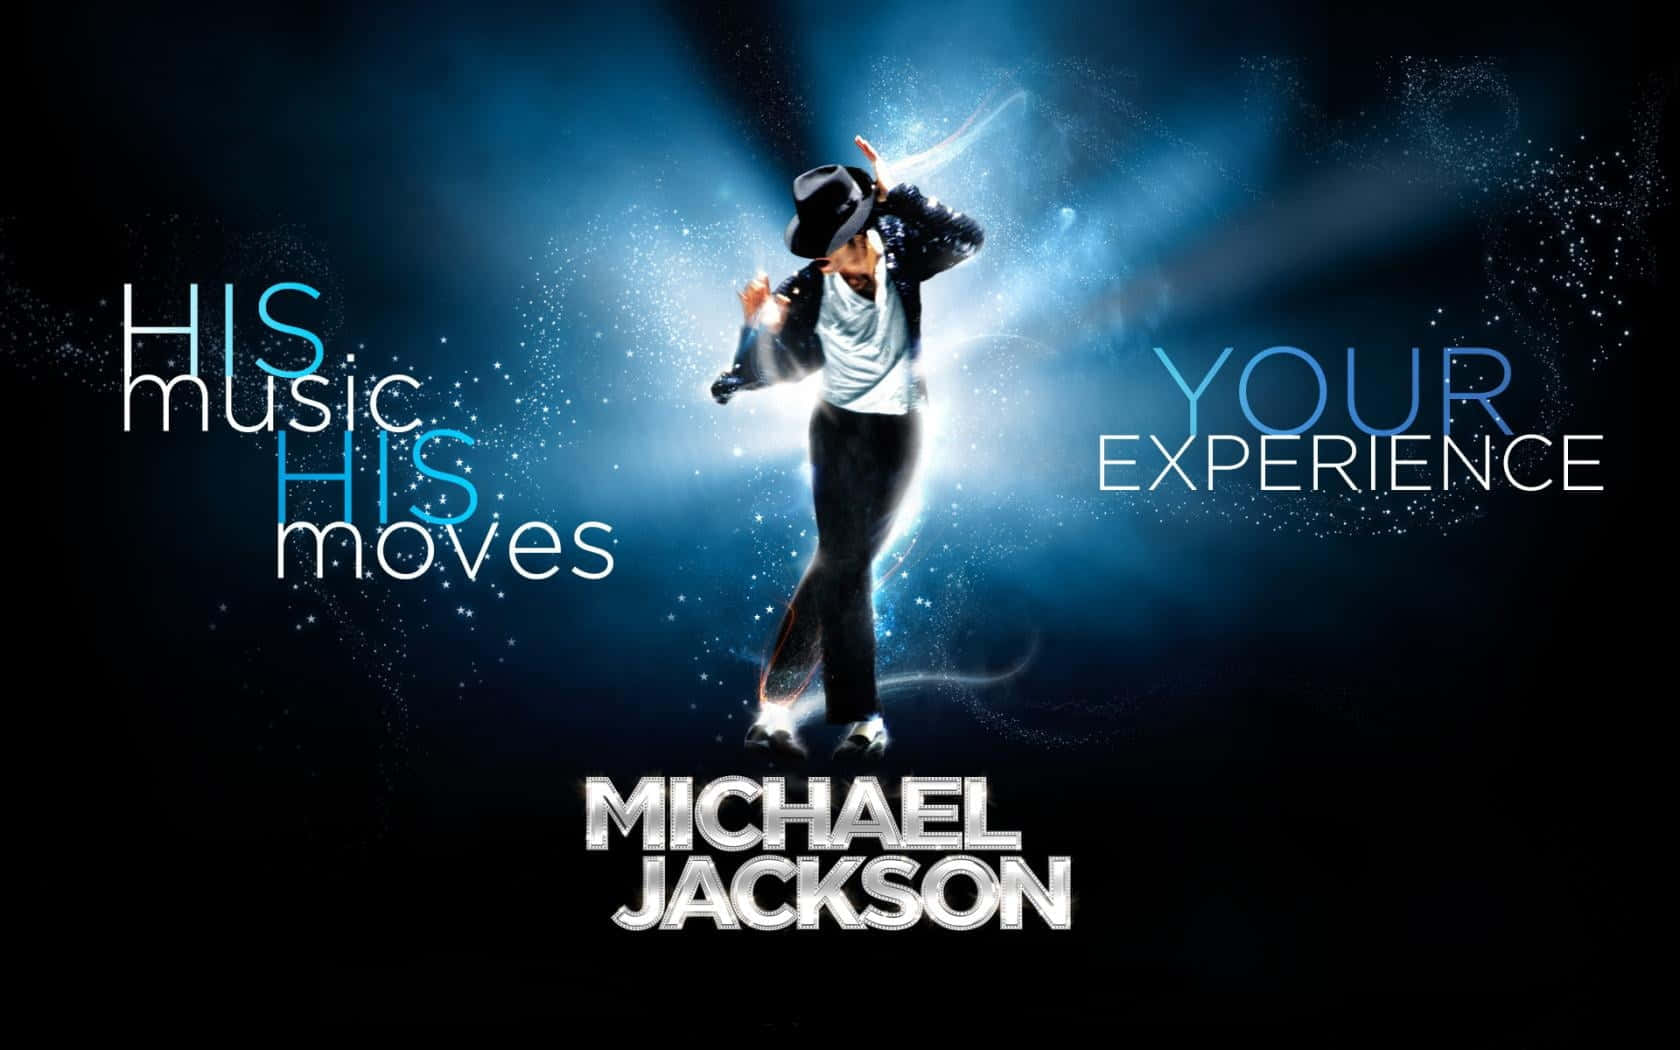 Feiernsie Michael Jacksons Vermächtnis Mit Einem Iphone Wallpaper